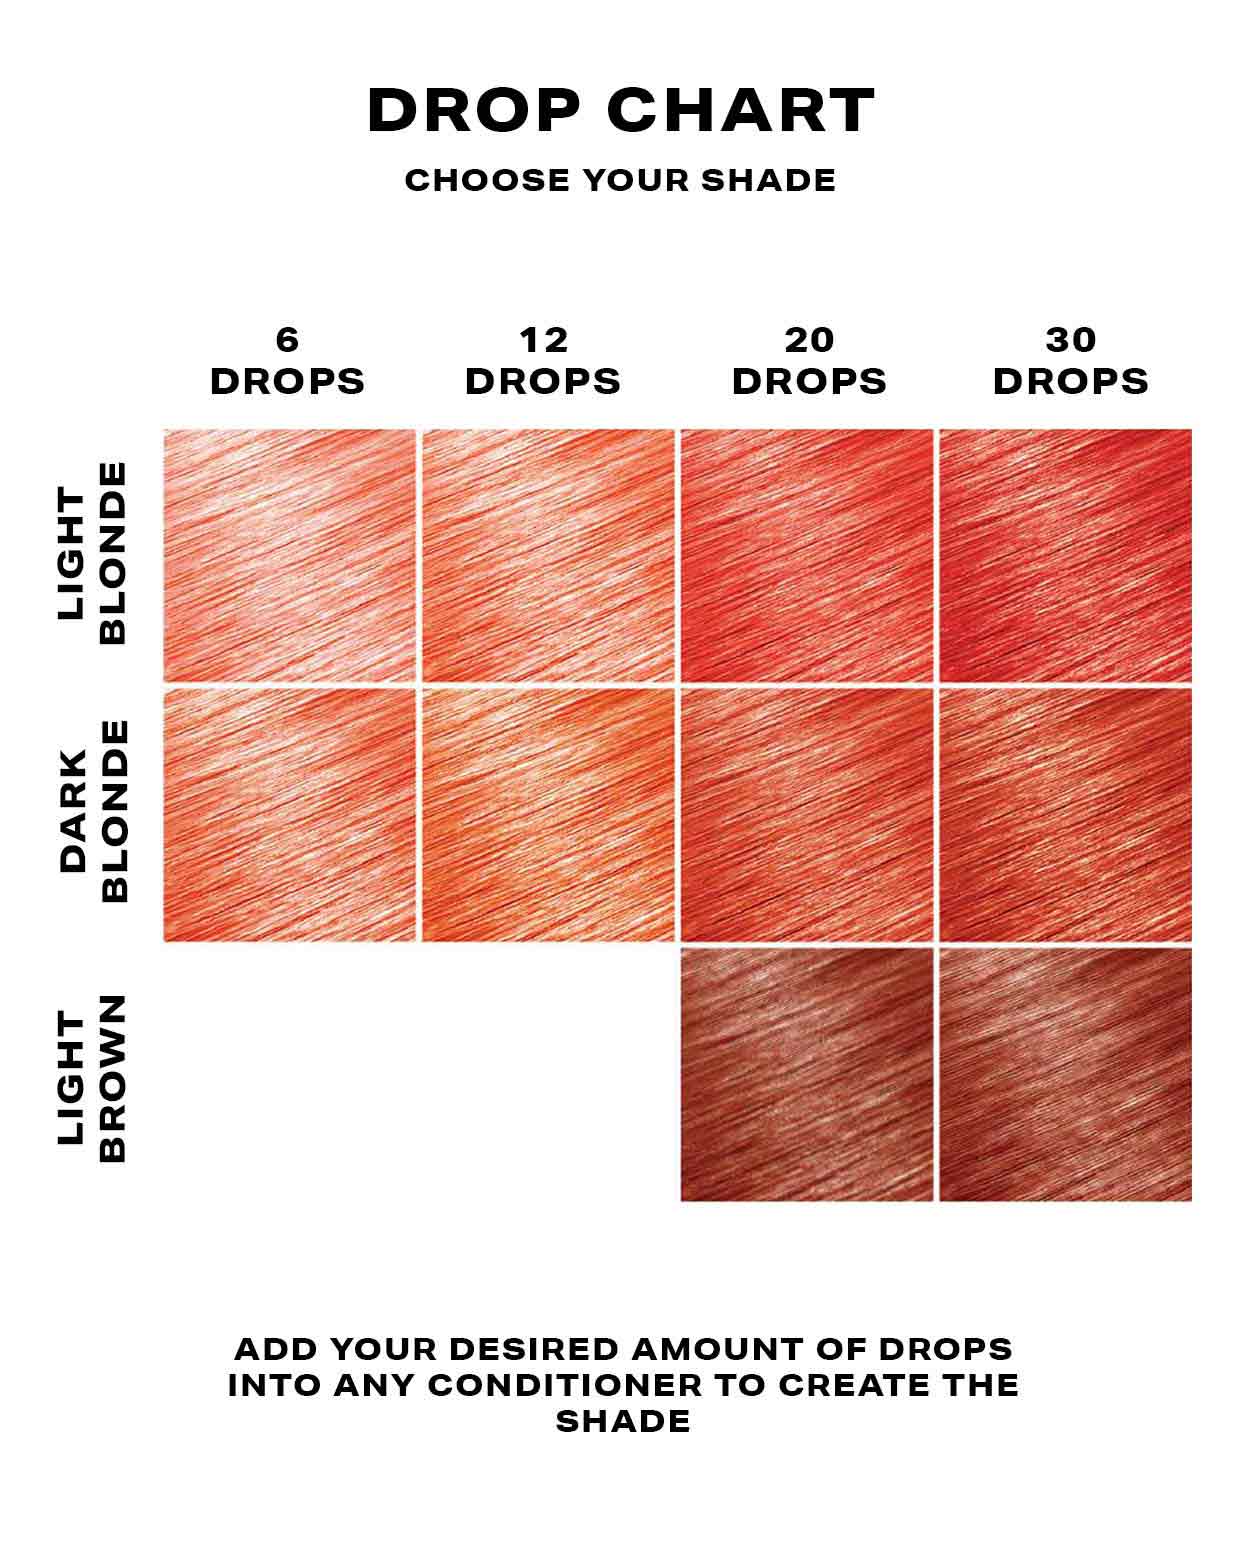 Peach hair dye DROP IT chart